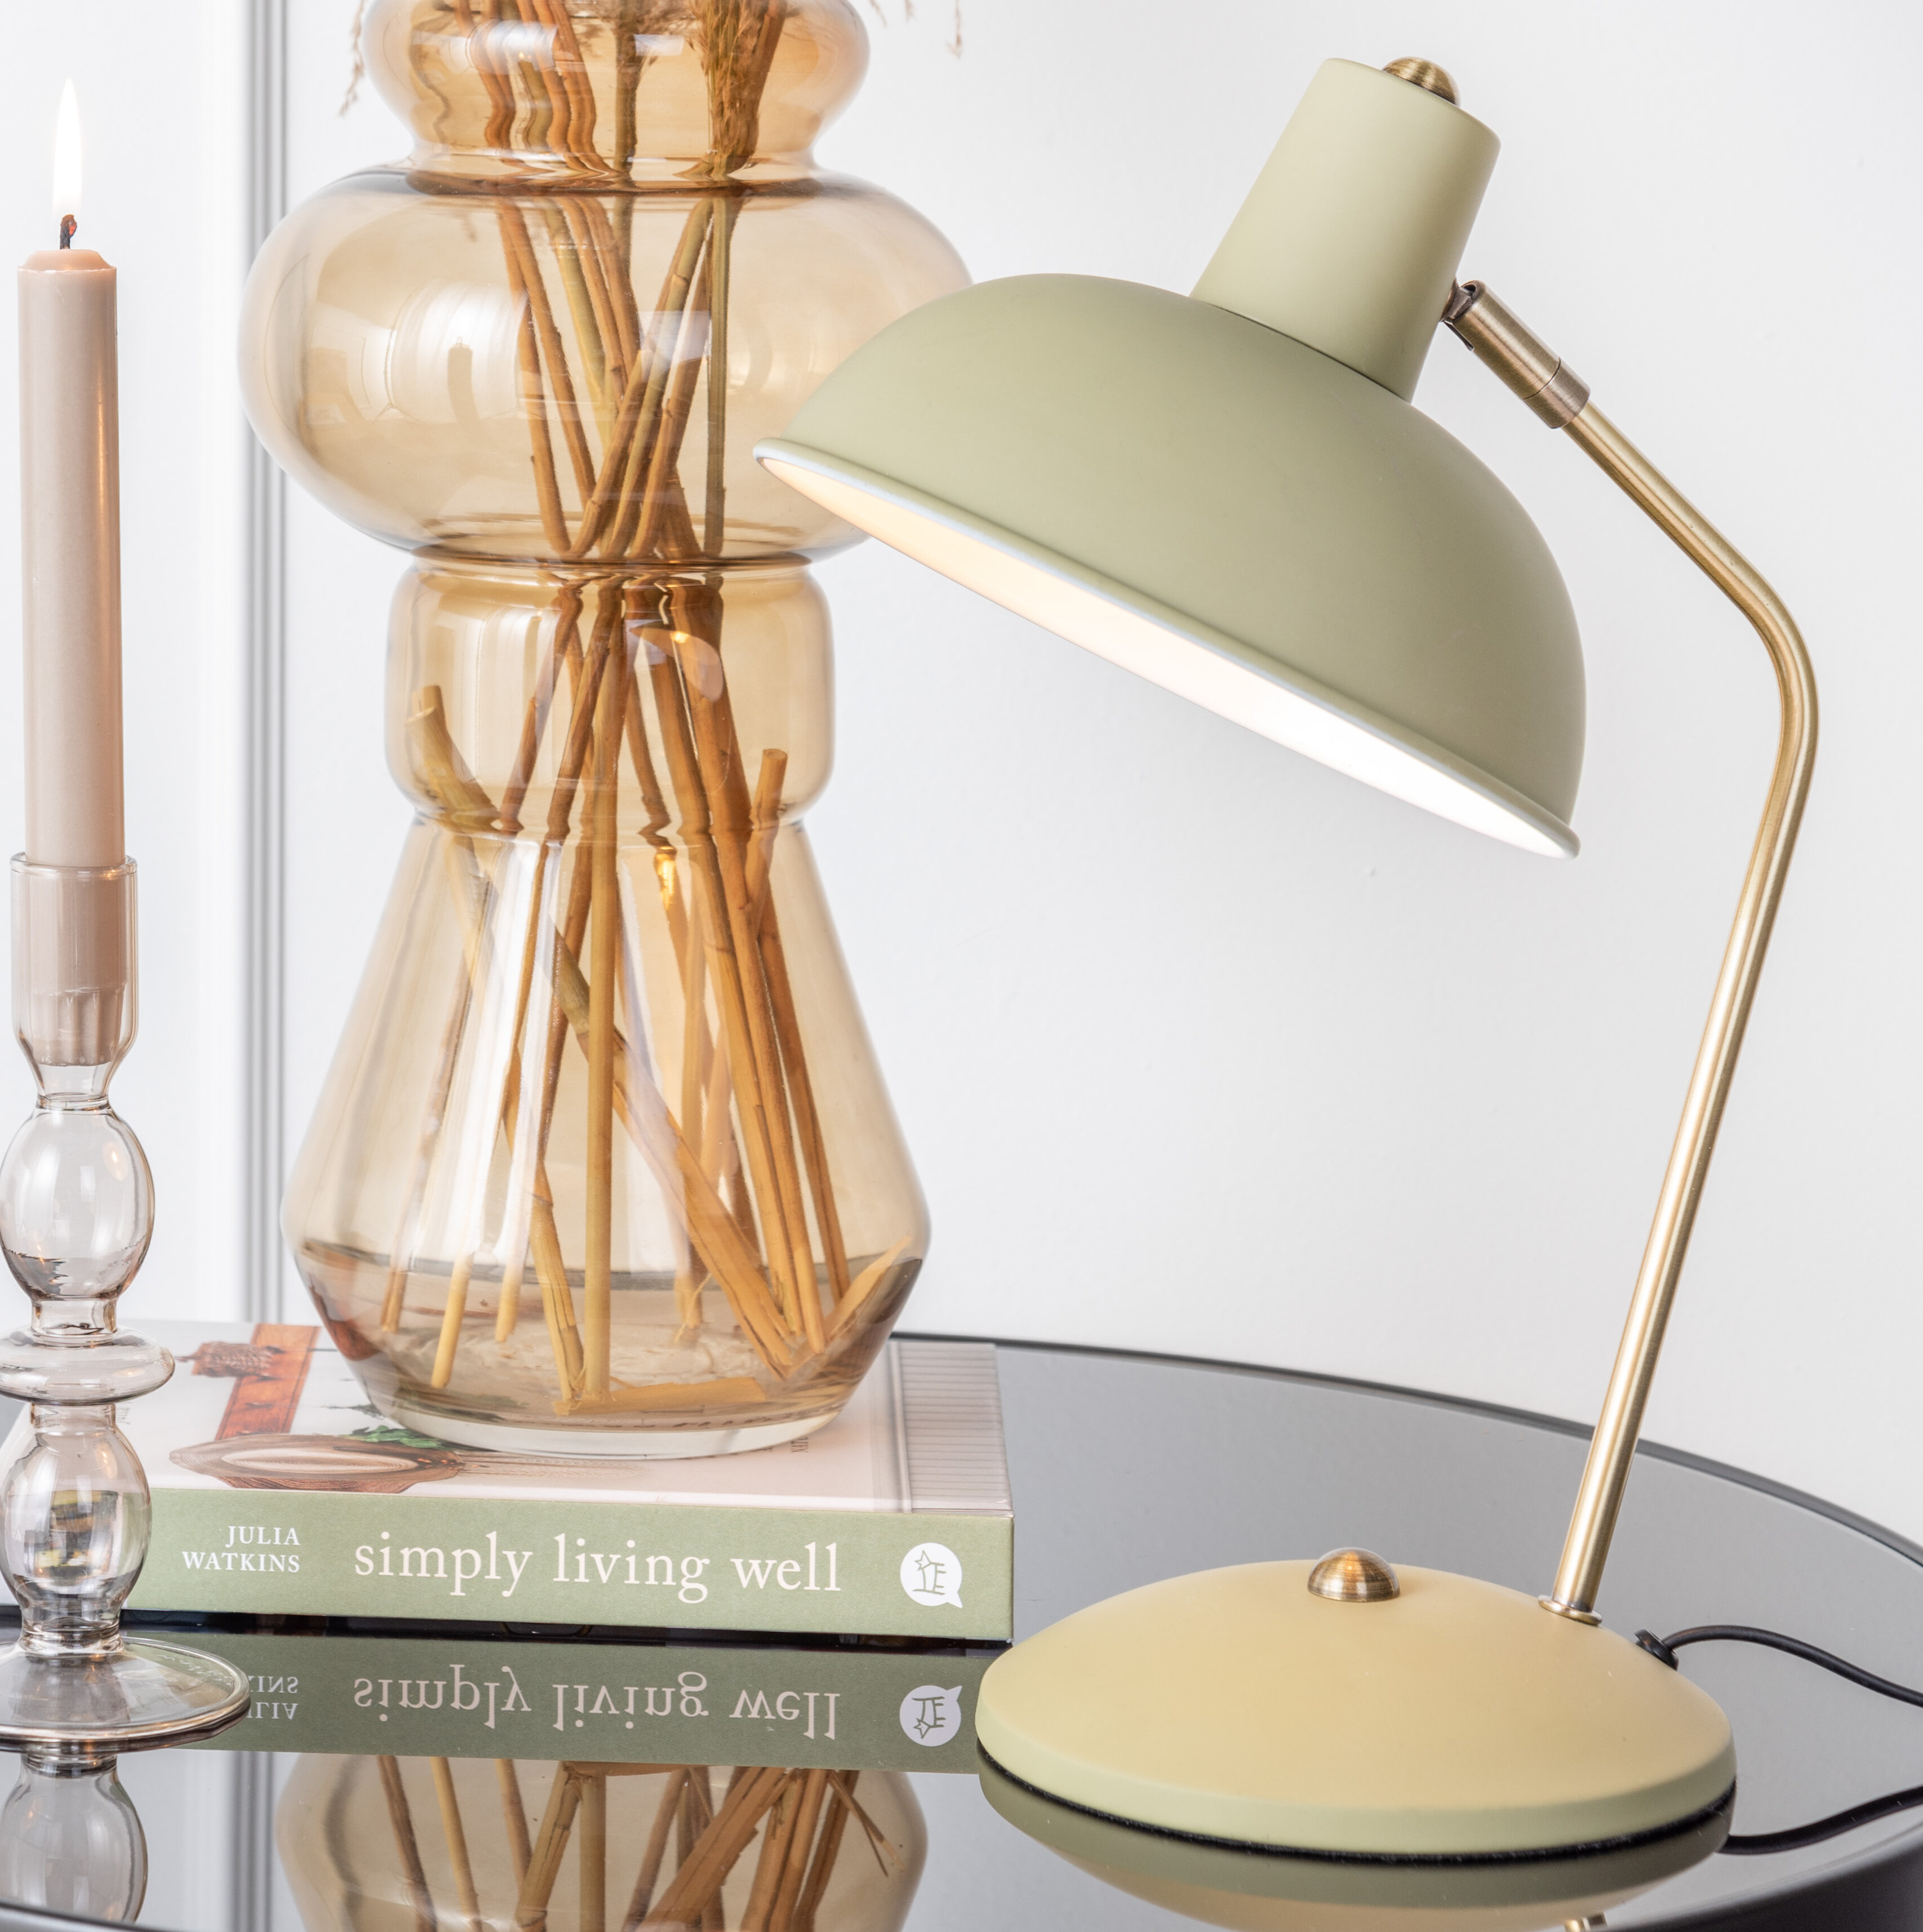 Green Table Lighting Iron Leitmotiv Lamp